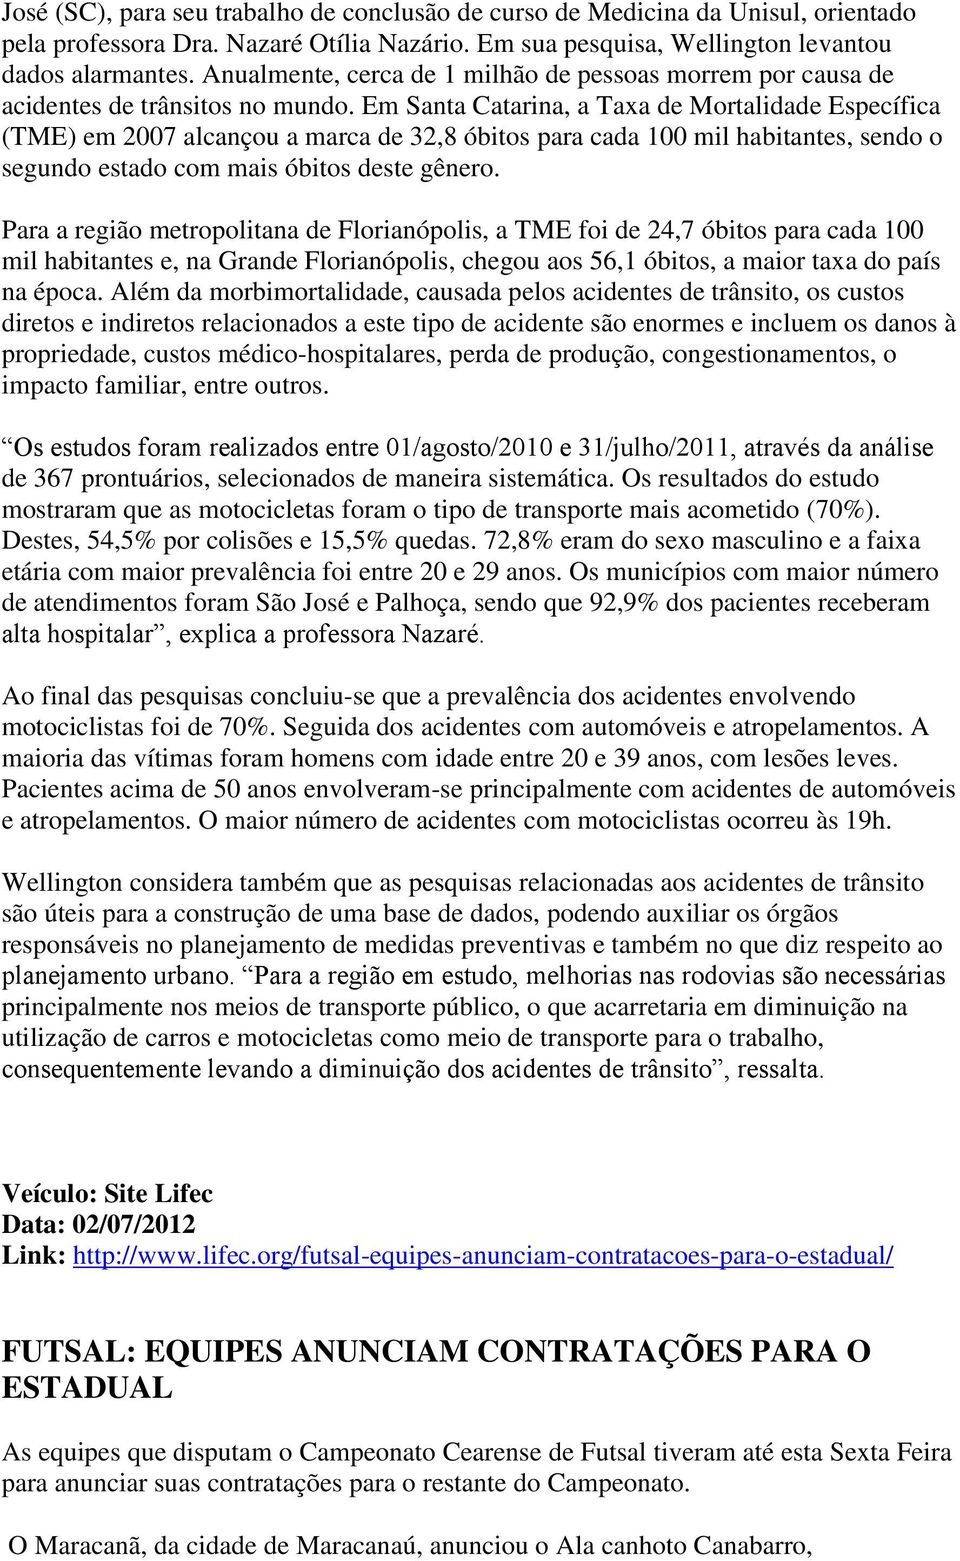 Em Santa Catarina, a Taxa de Mortalidade Específica (TME) em 2007 alcançou a marca de 32,8 óbitos para cada 100 mil habitantes, sendo o segundo estado com mais óbitos deste gênero.